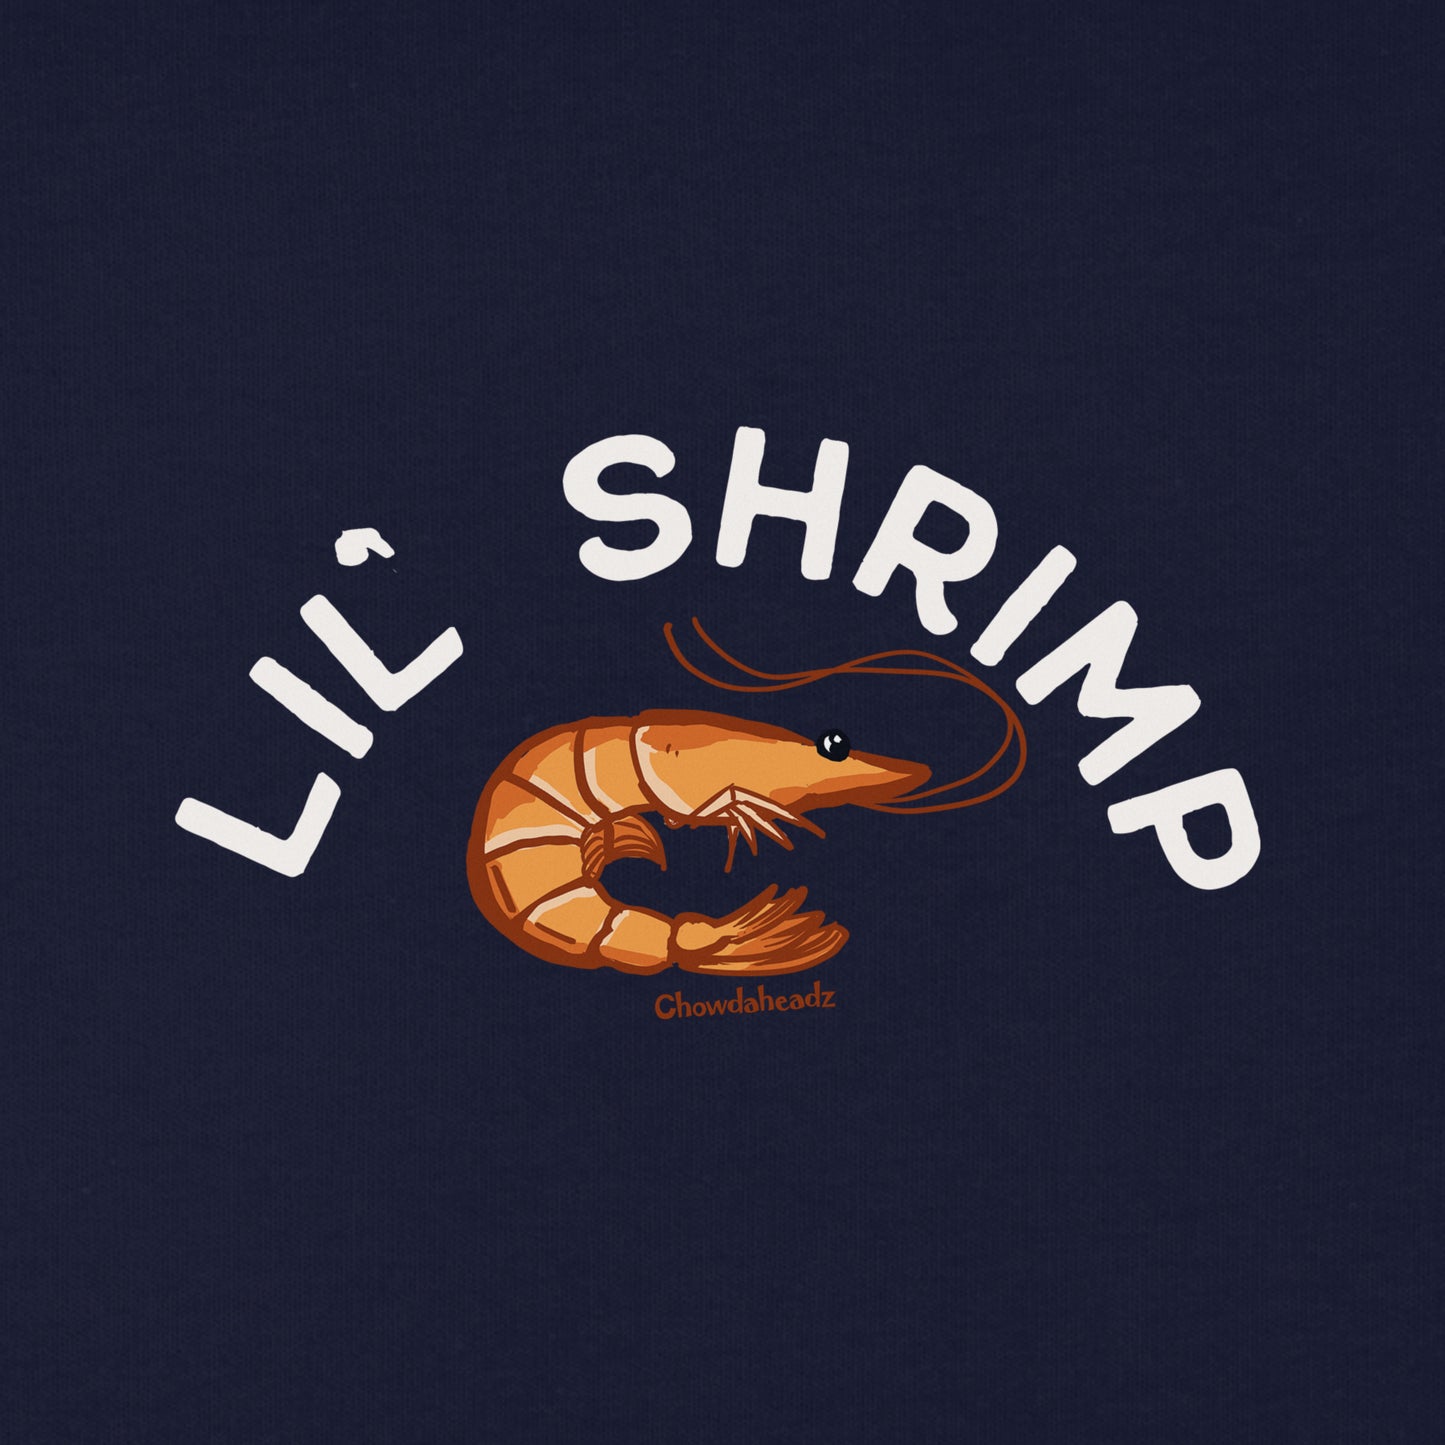 Lil' Shrimp Youth T-shirt - Chowdaheadz